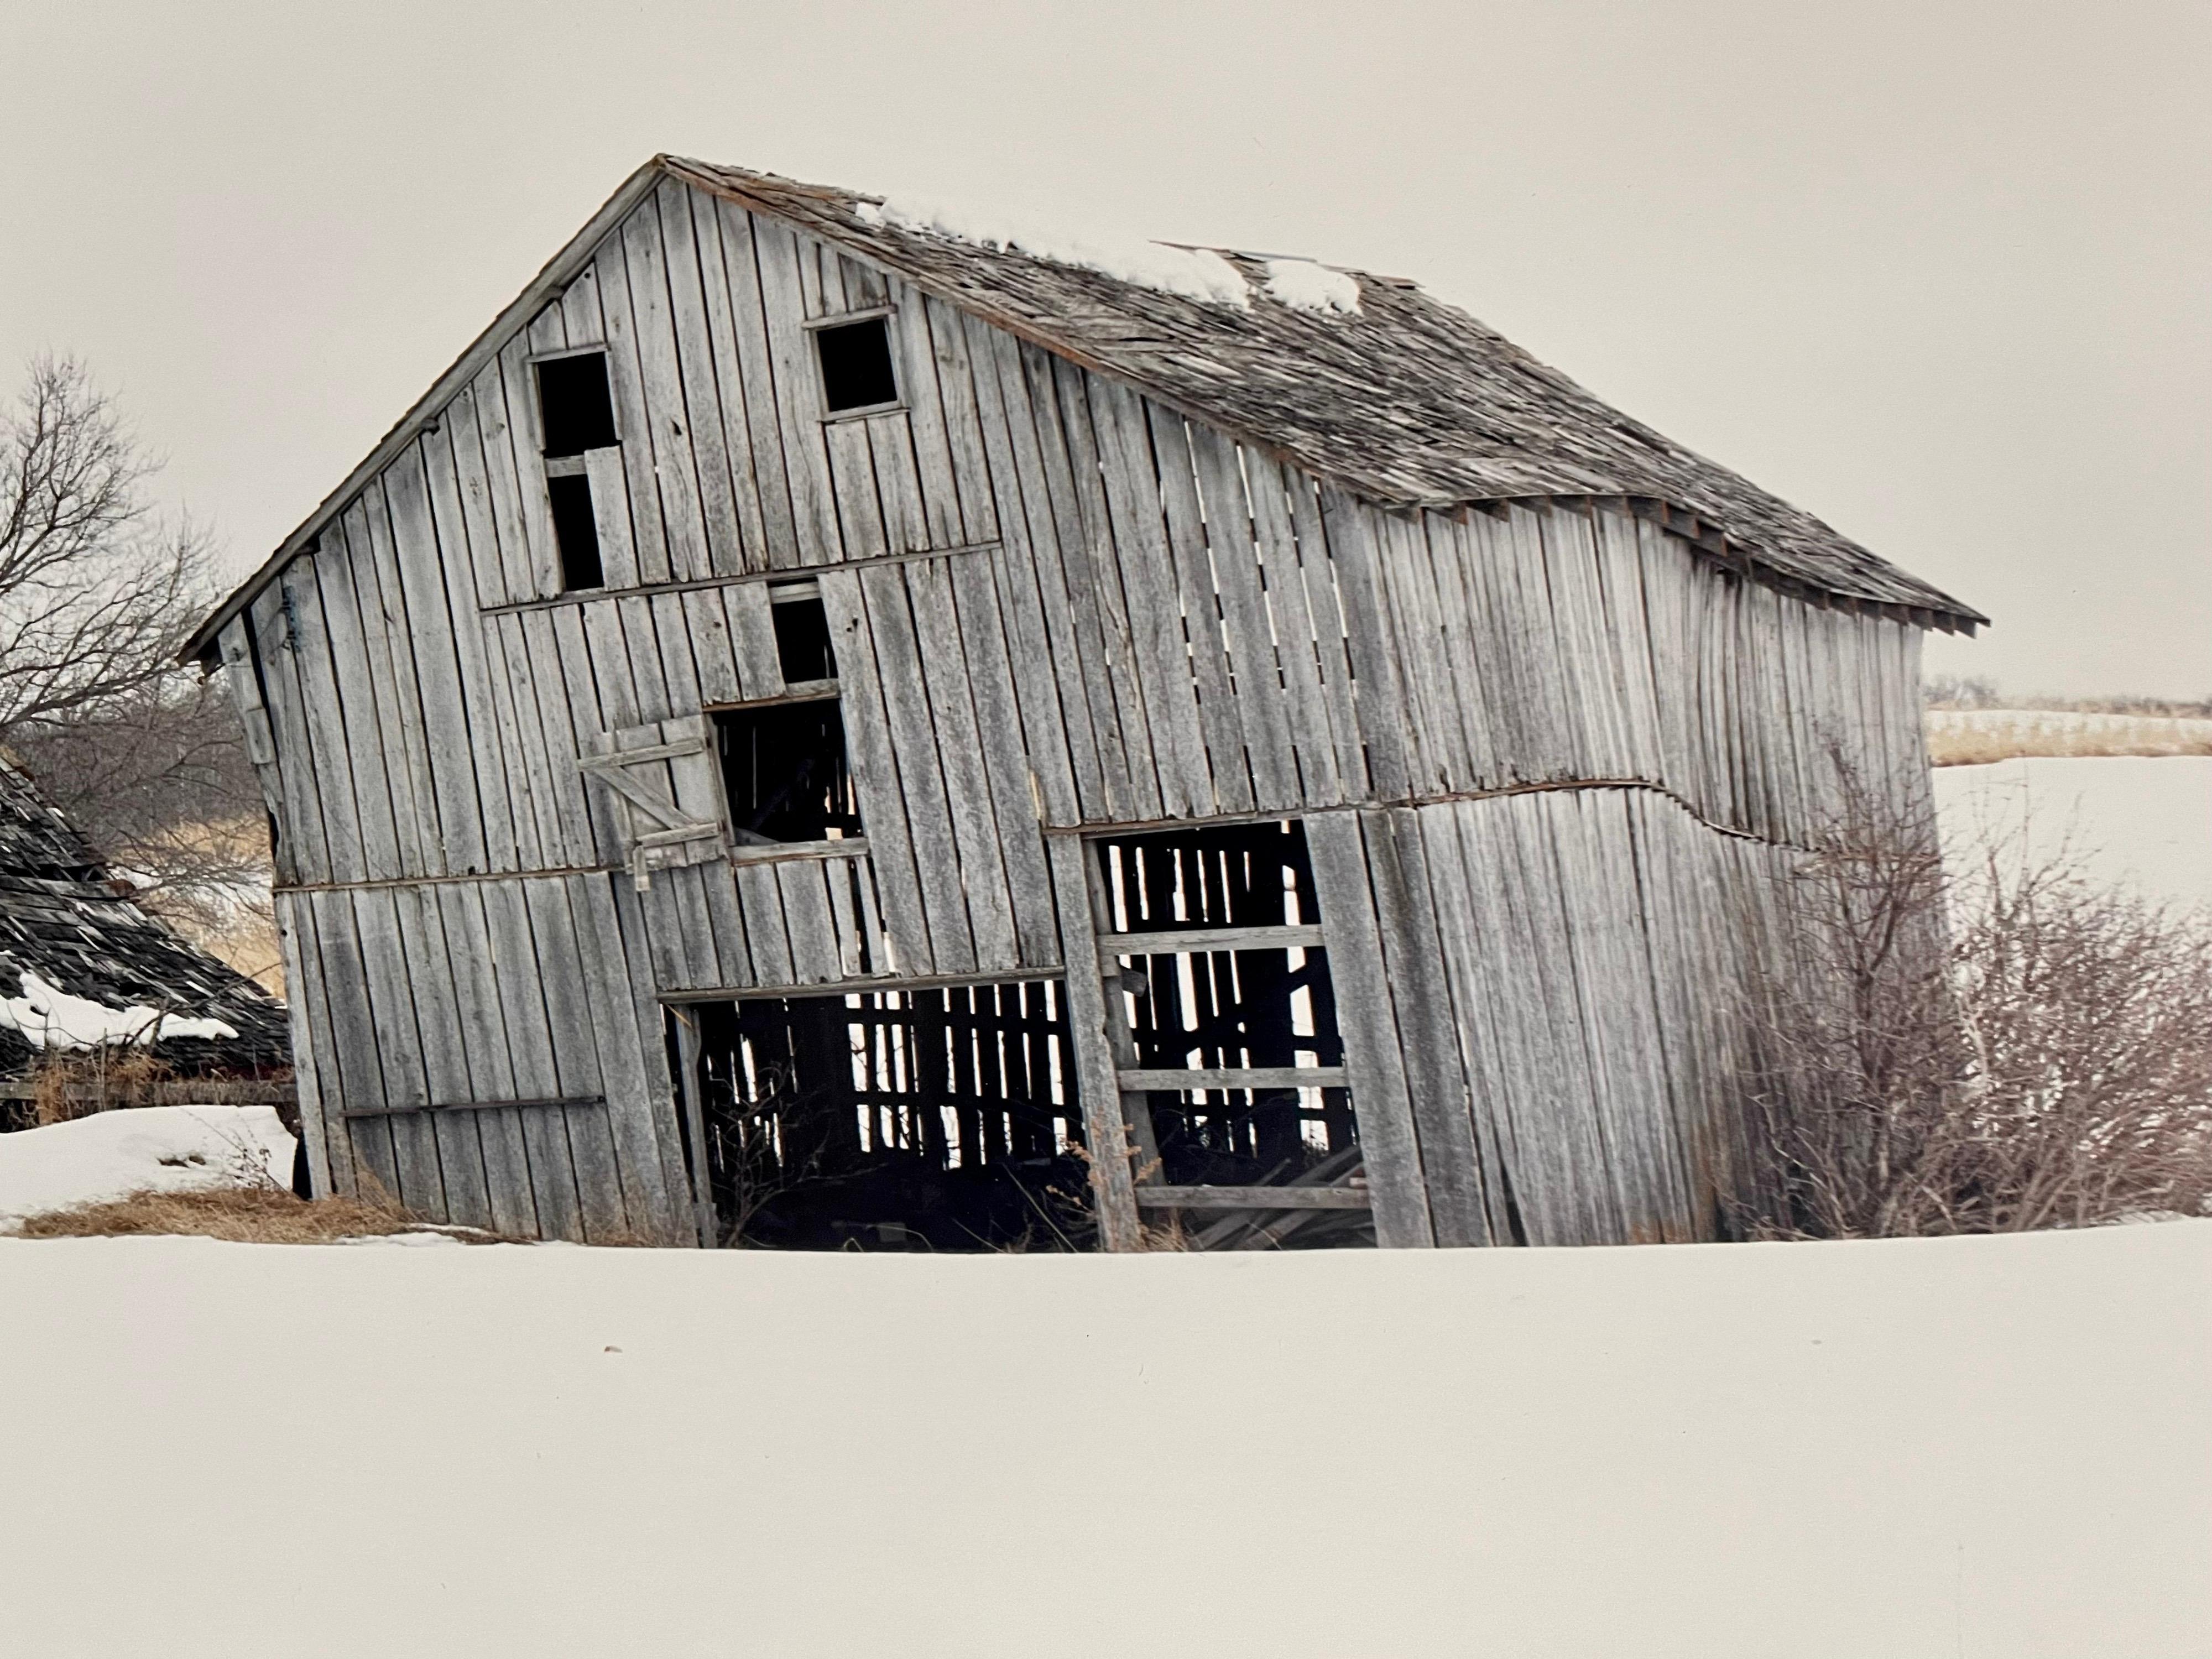 Maplewood Township Homestead, Winter, 1993
Fabelhafte amerikanische Landschaftsfotografie einer ländlichen Landschaftsszene. 
aus kleiner handsignierter Auflage von 20 Stück
Chromogener Großformatdruck auf Kodak Professional Papier
Die Blätter sind